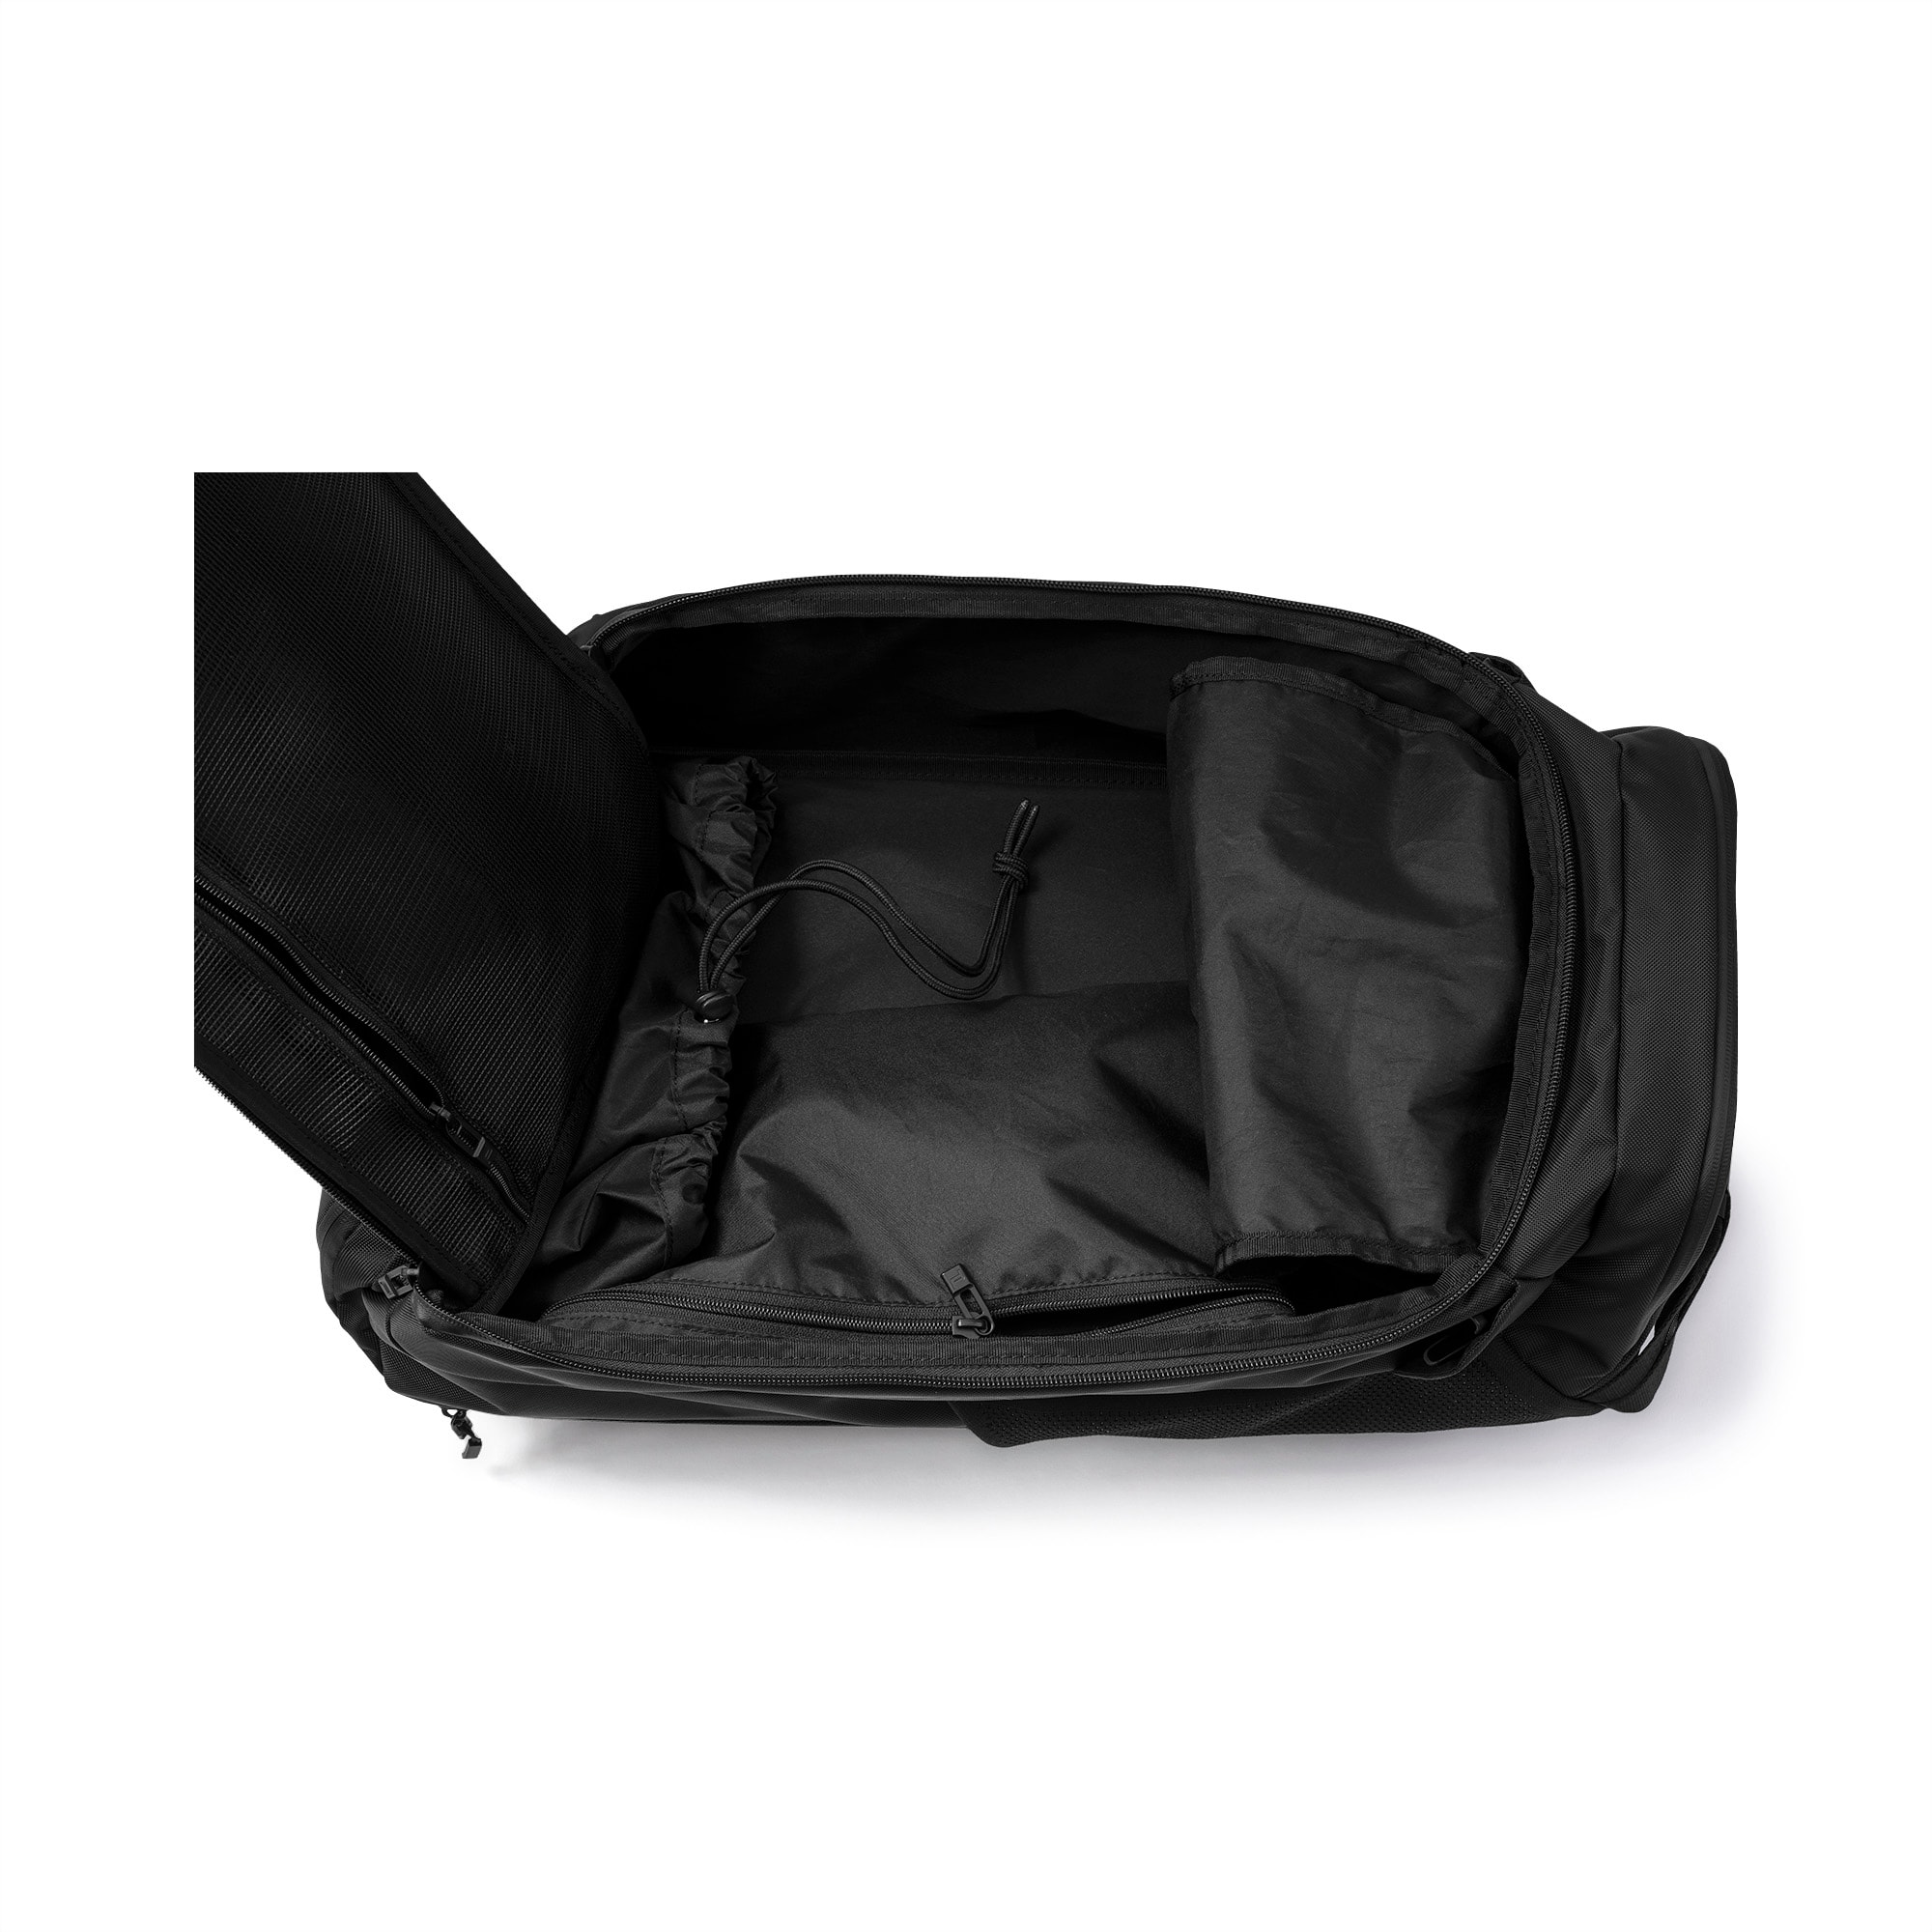 puma gym bag with shoe compartment